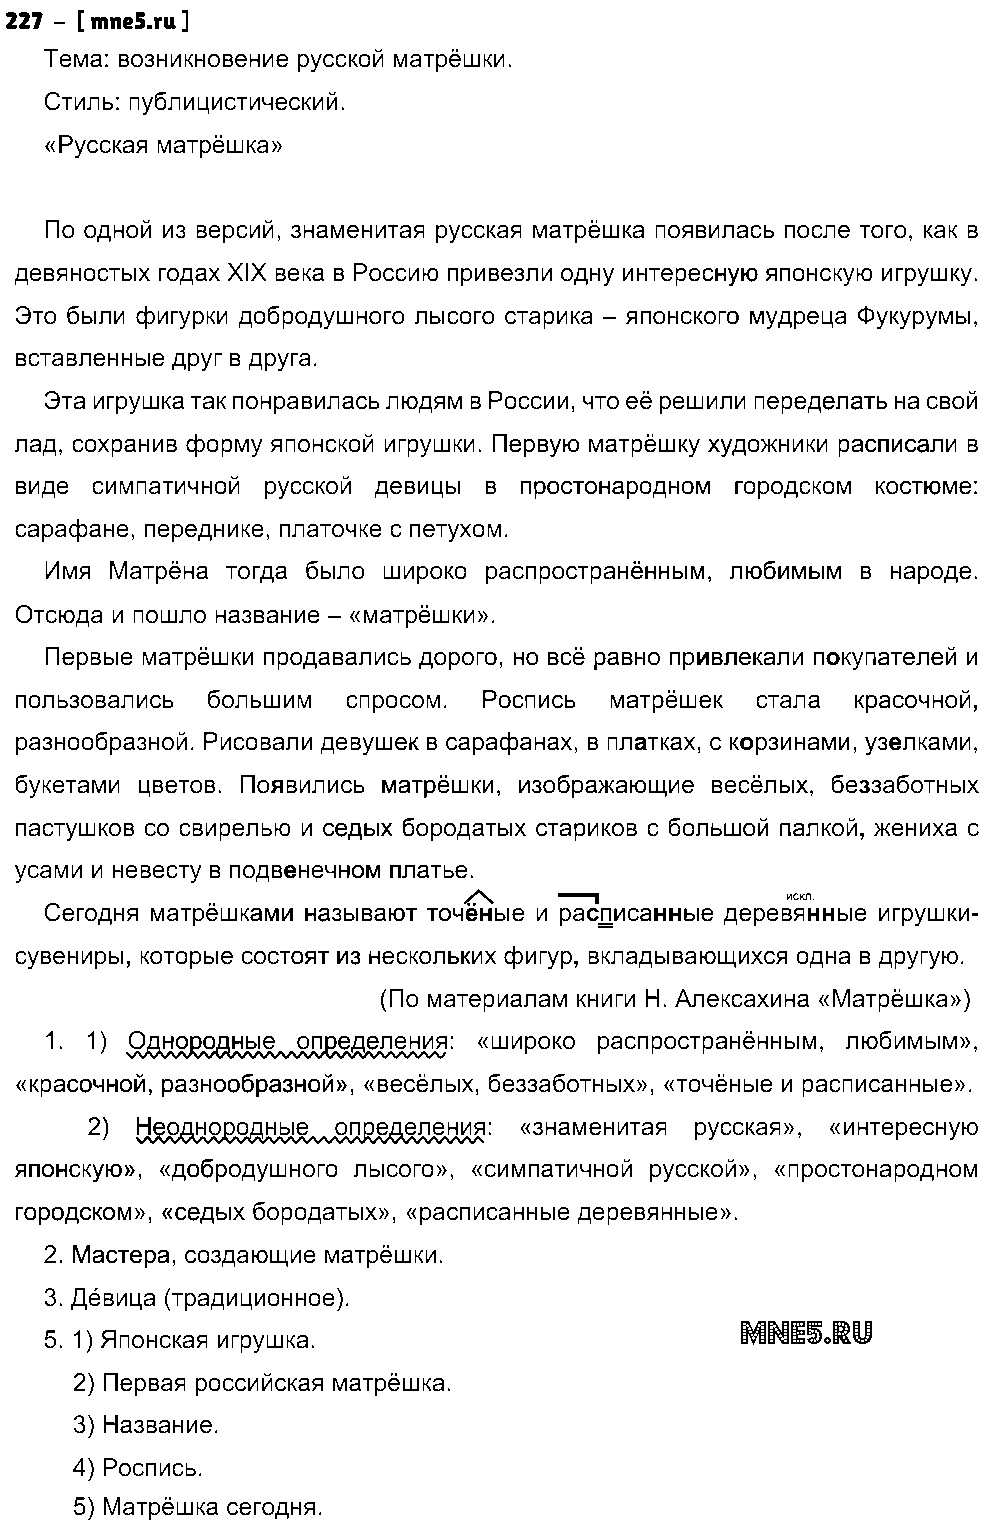 ГДЗ Русский язык 8 класс - 227